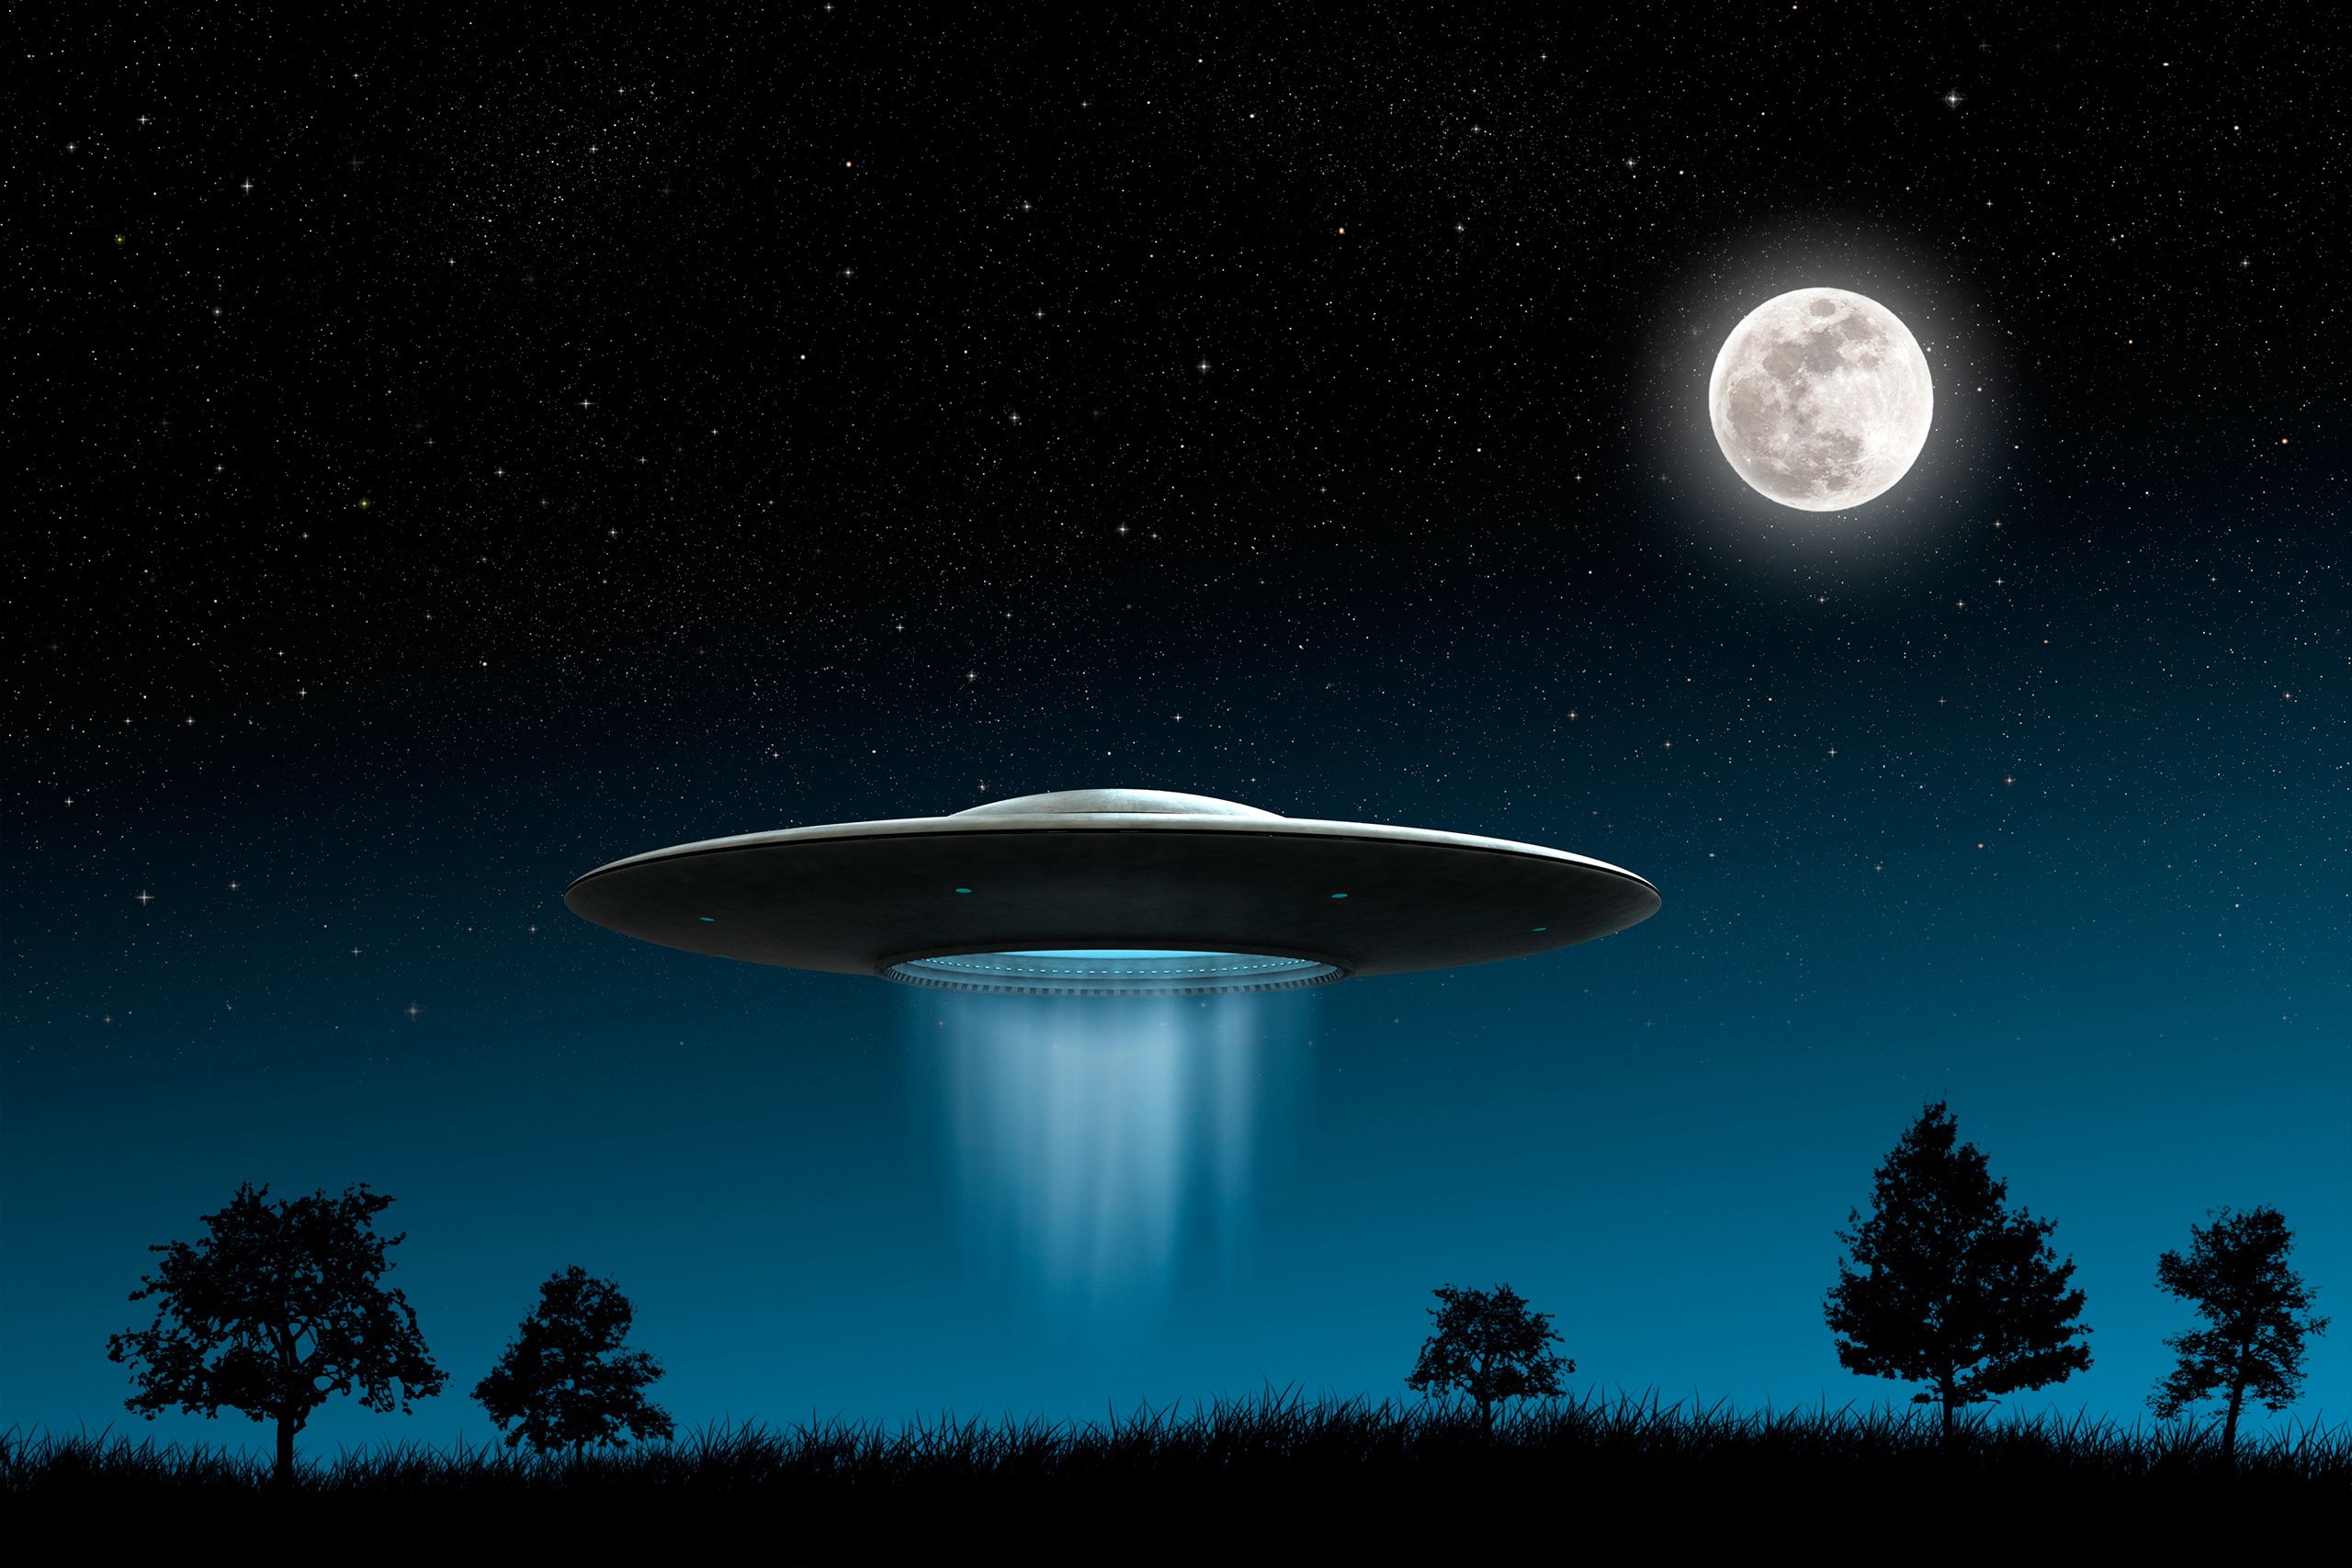 ΗΠΑ: Το Πεντάγωνο επιβεβαιώνει μυστηριώδεις συναντήσεις με UFO (βίντεο)